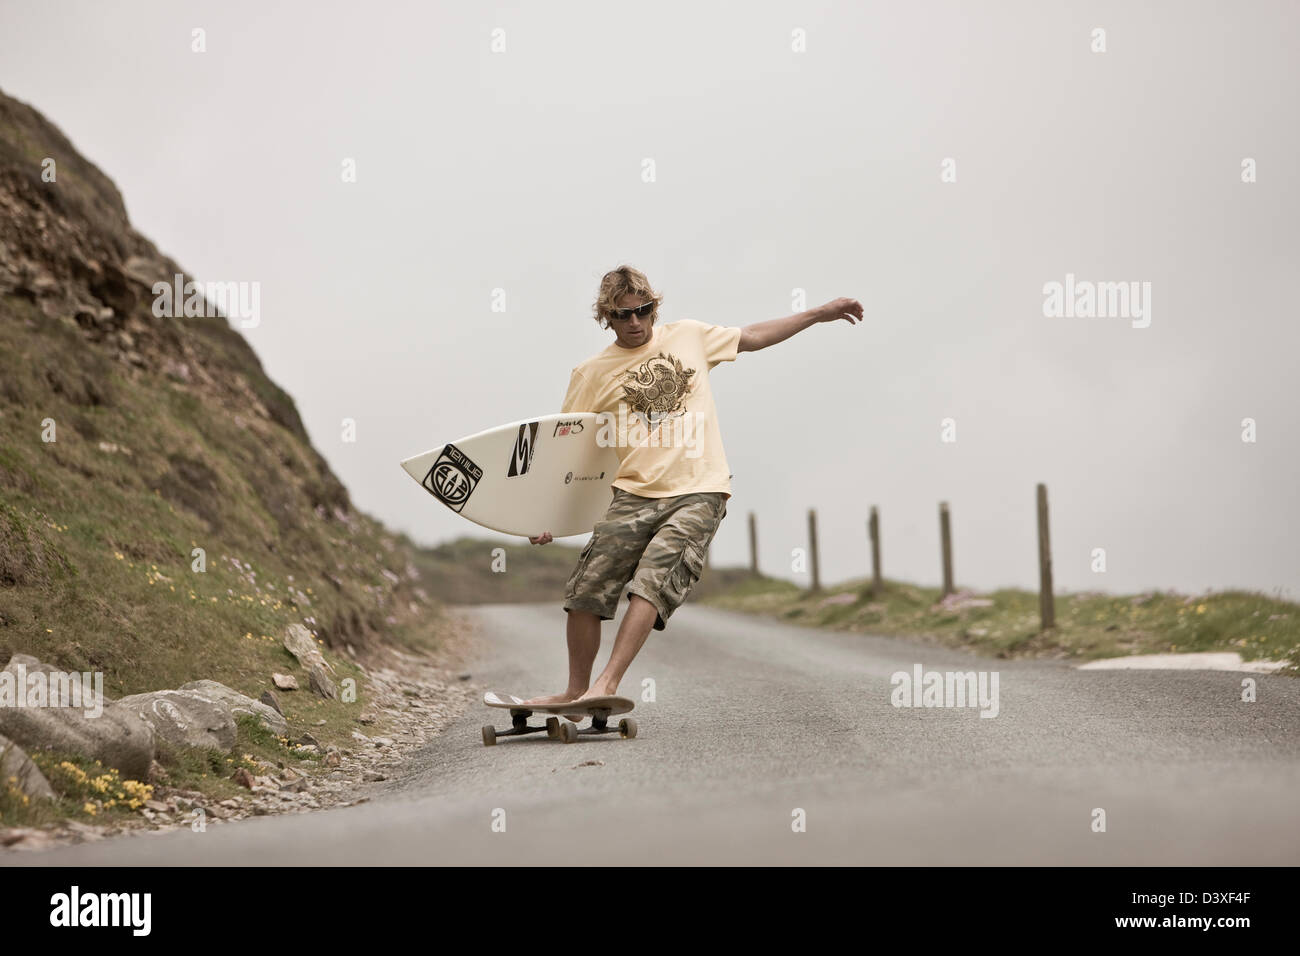 Surfer on skateboard, St Agnes, Cornwall, UK Stock Photo